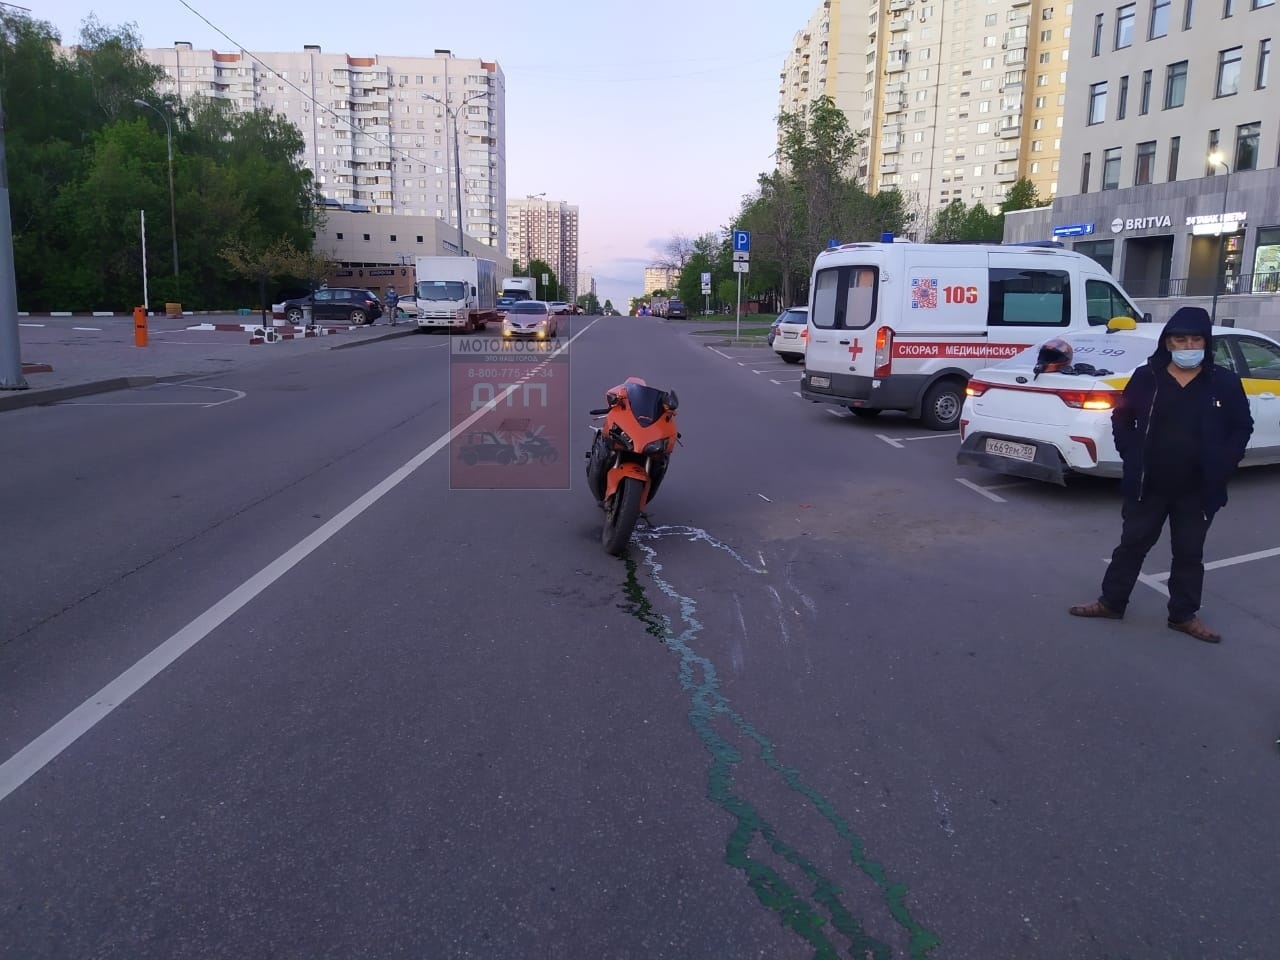 15.05.20 20:42 ДТП, улица Маршала Захарова, дом 6 к1. Мотоцикл/такси, пострадавших по здоровью нет.